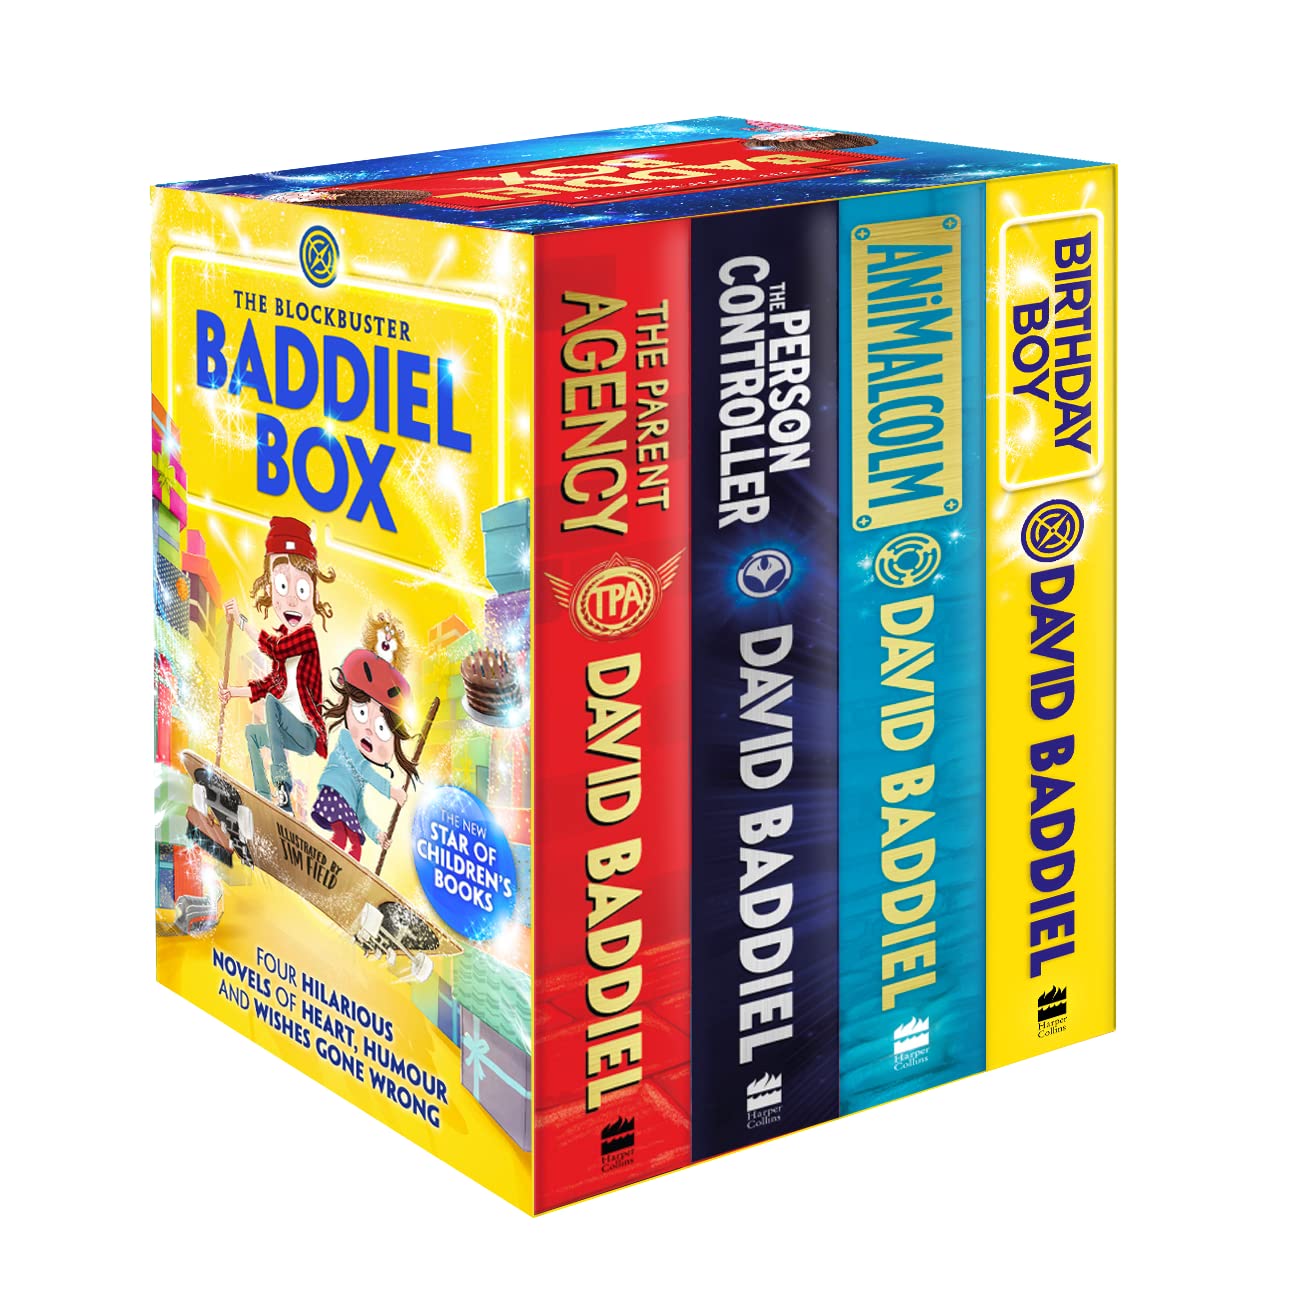 The Blockbuster Baddiel Box